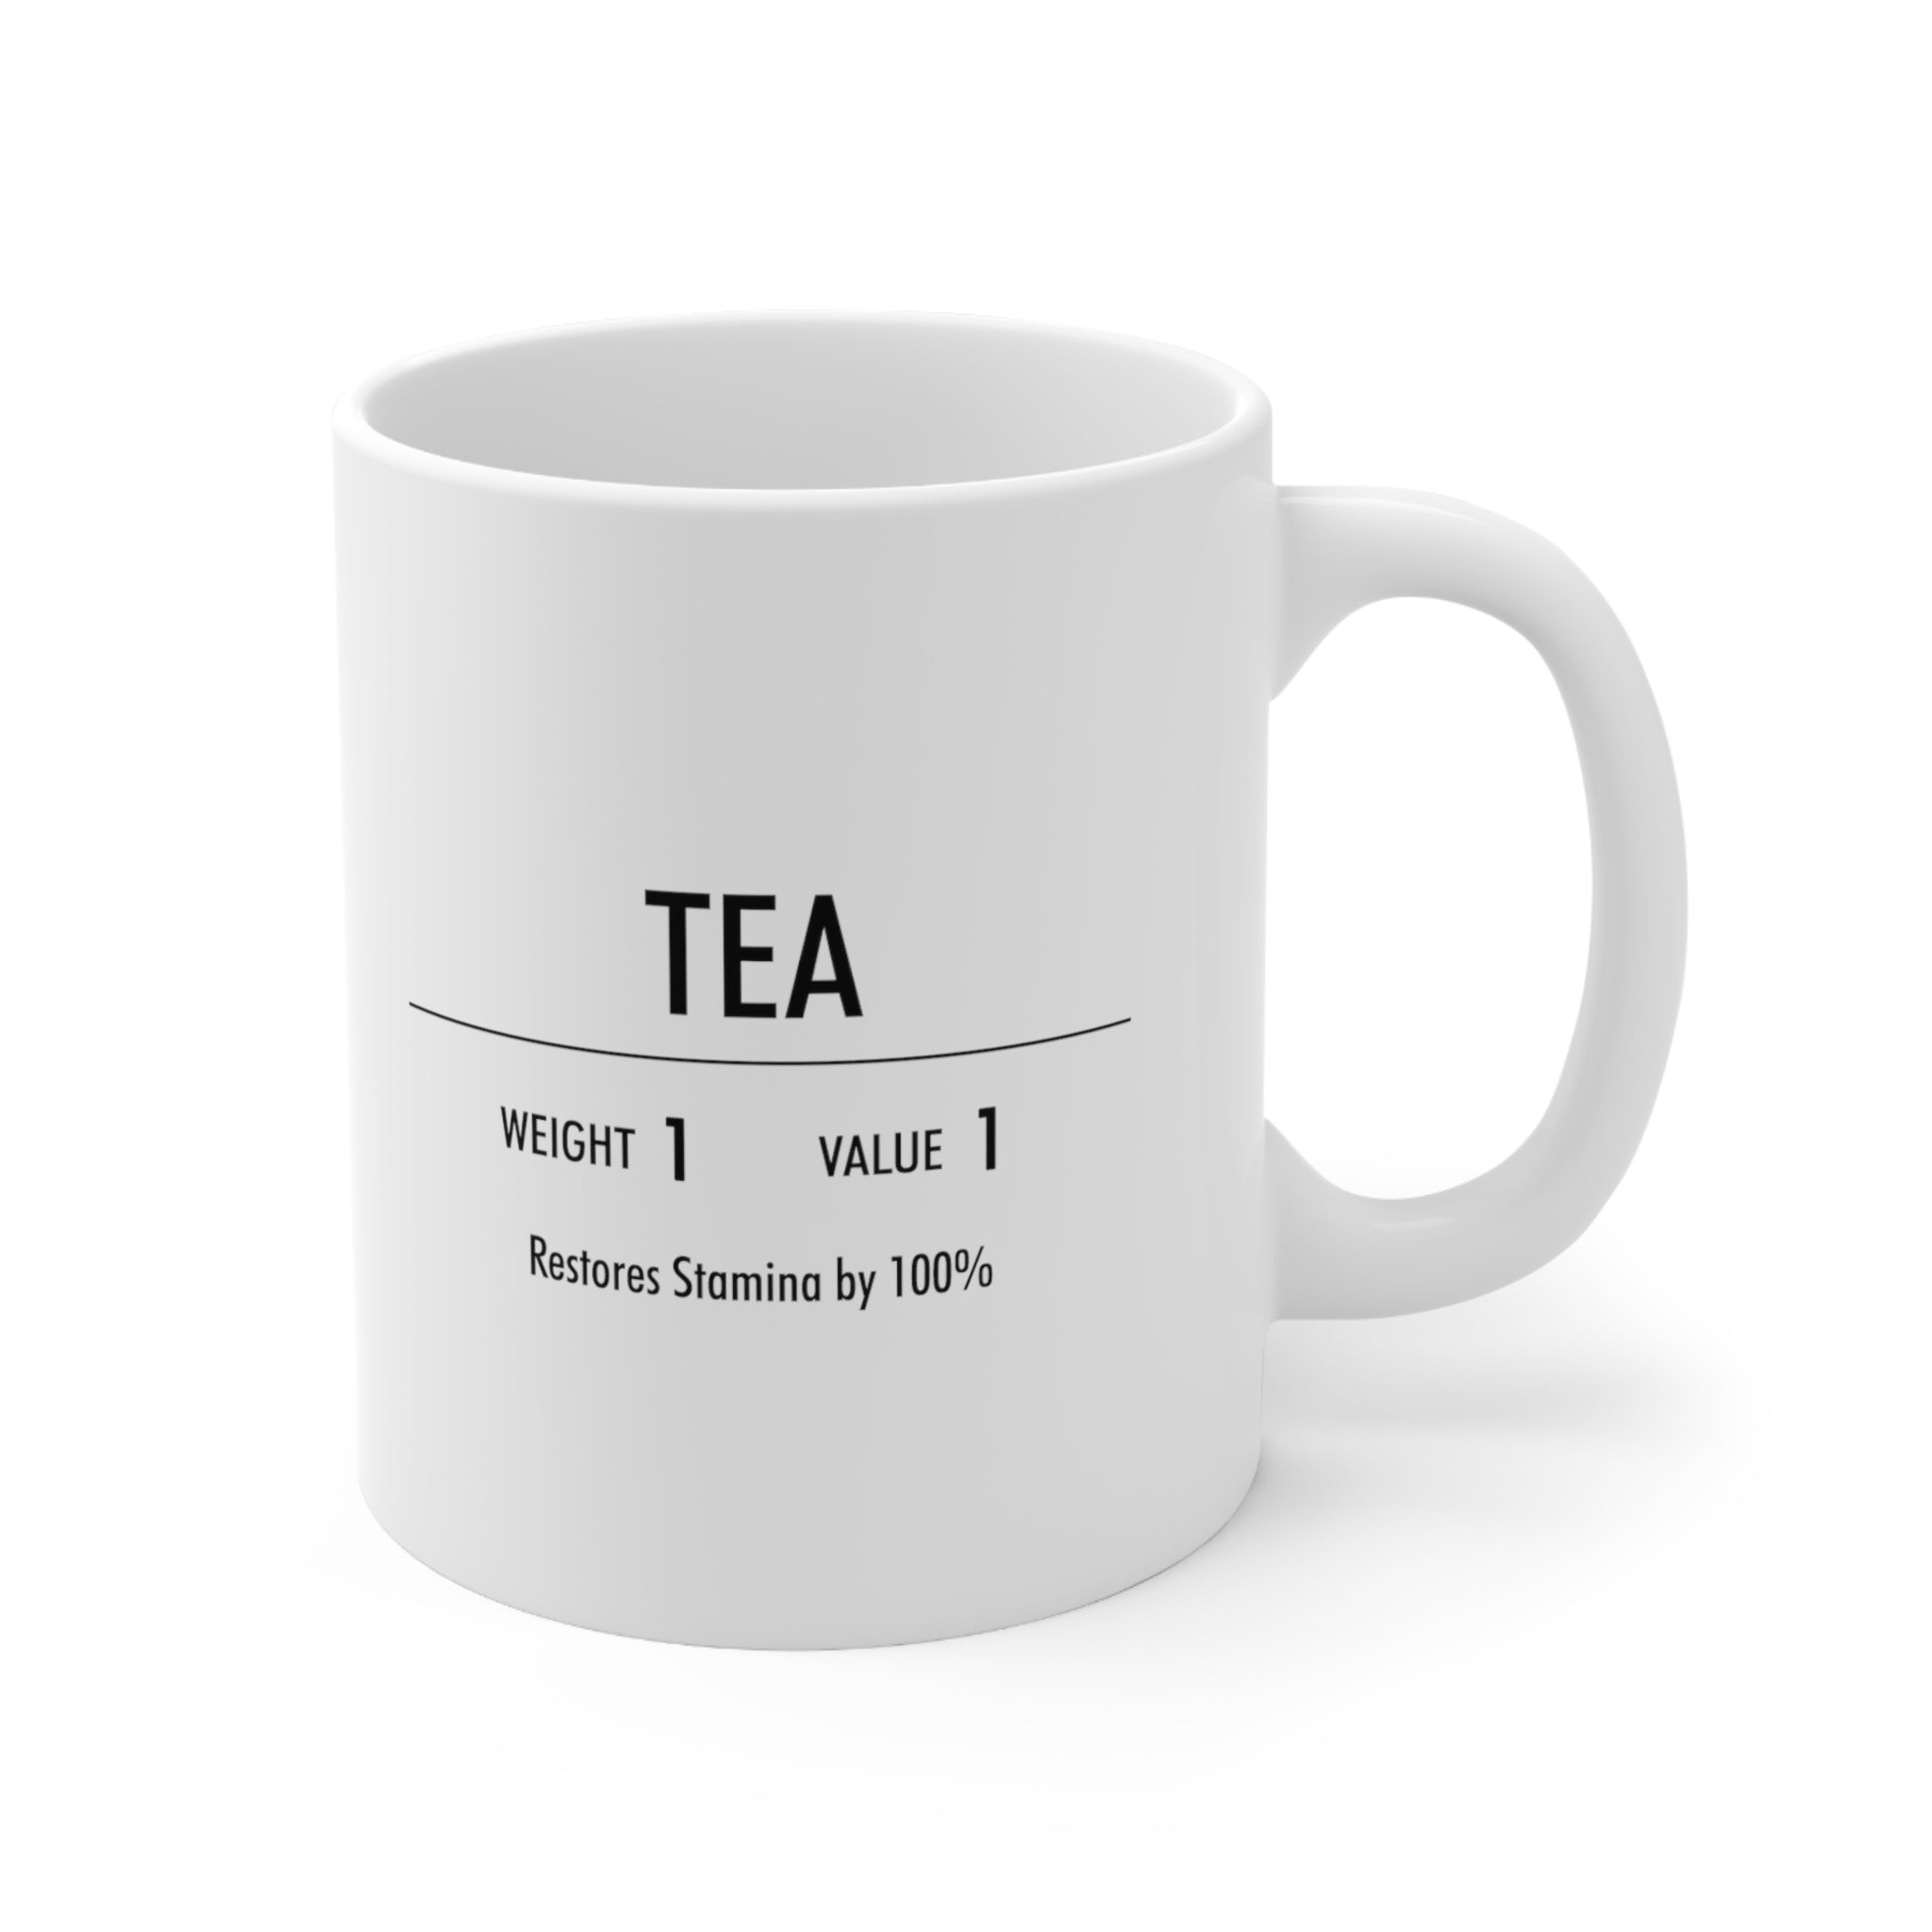 Tea Mug, 11oz, Skyrim Inspired, Gamer Mug, Gift for Gamer